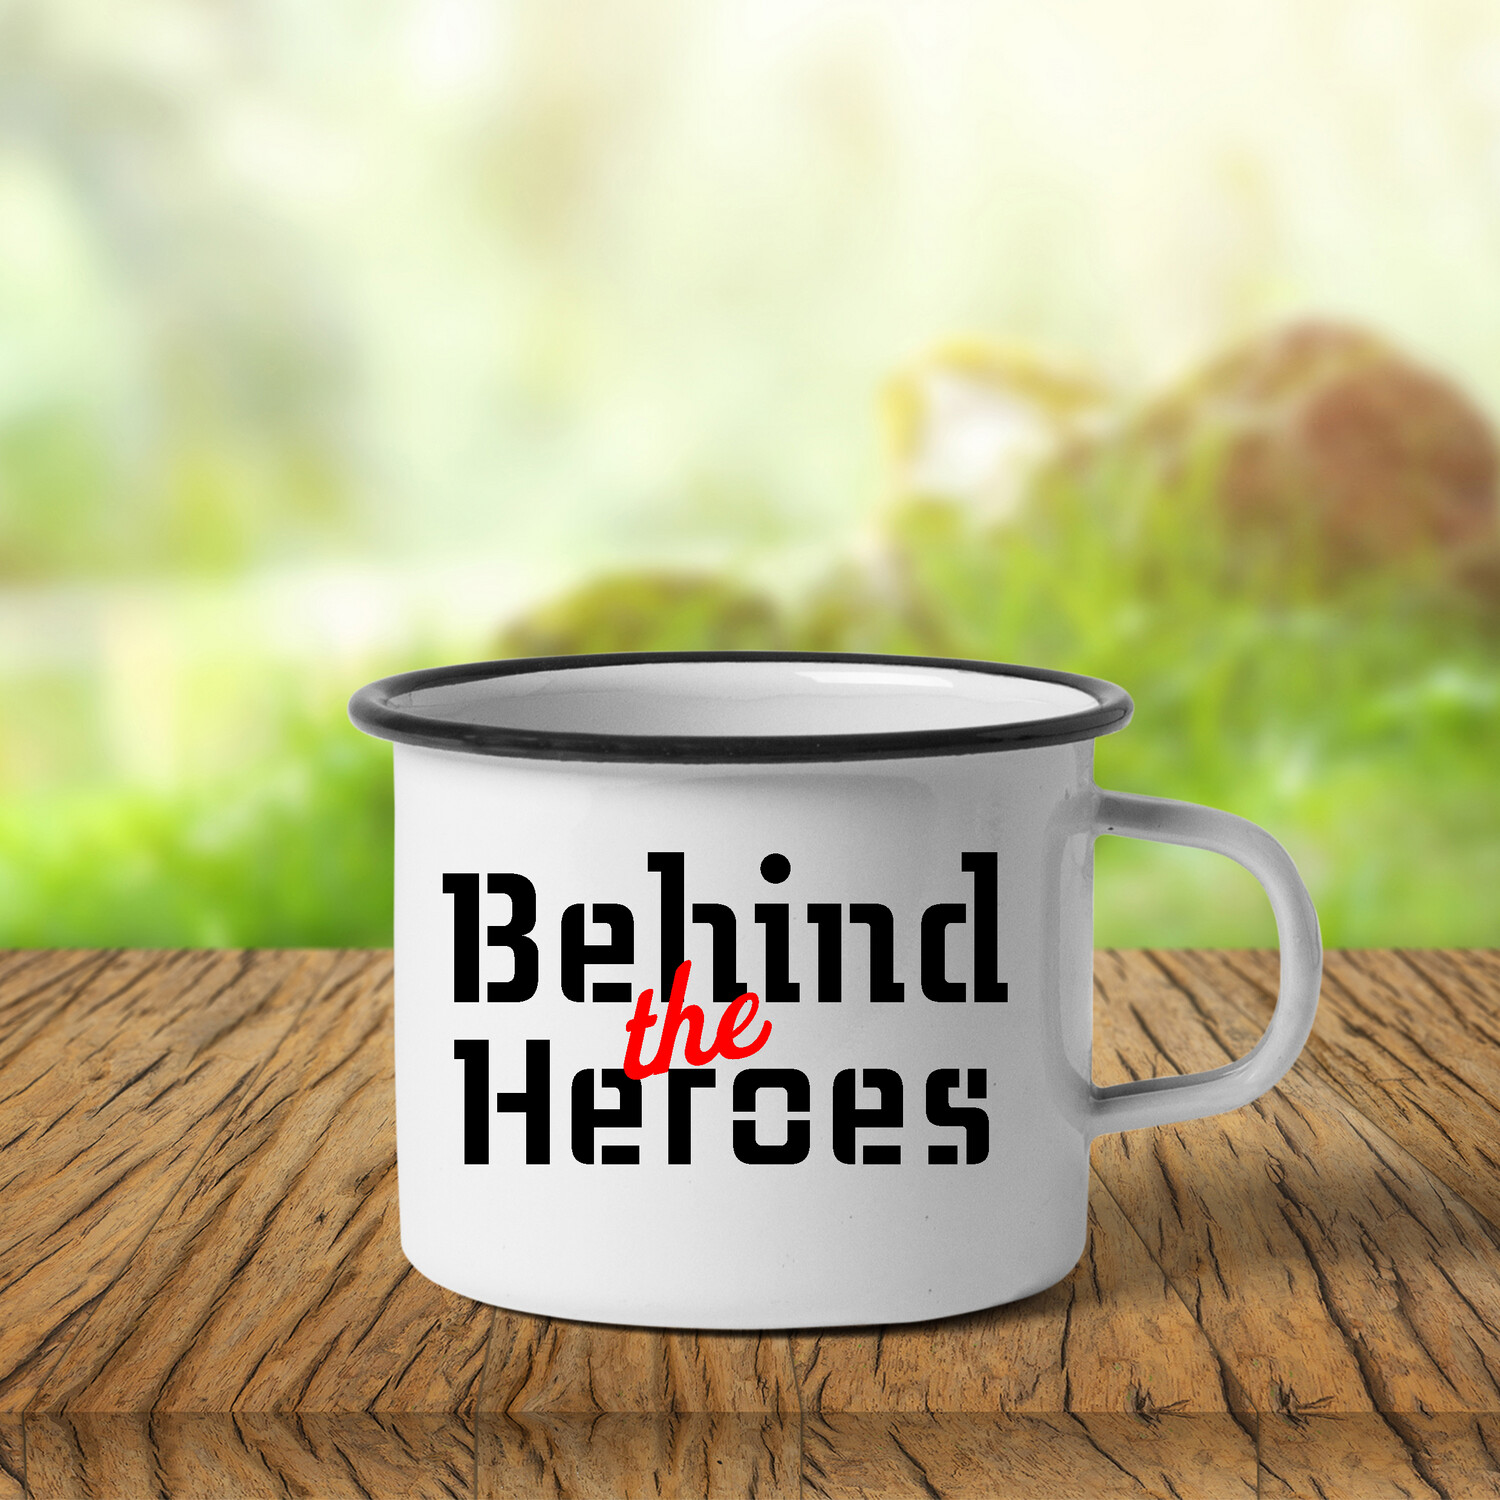 Behind the Heroes metal camping mug